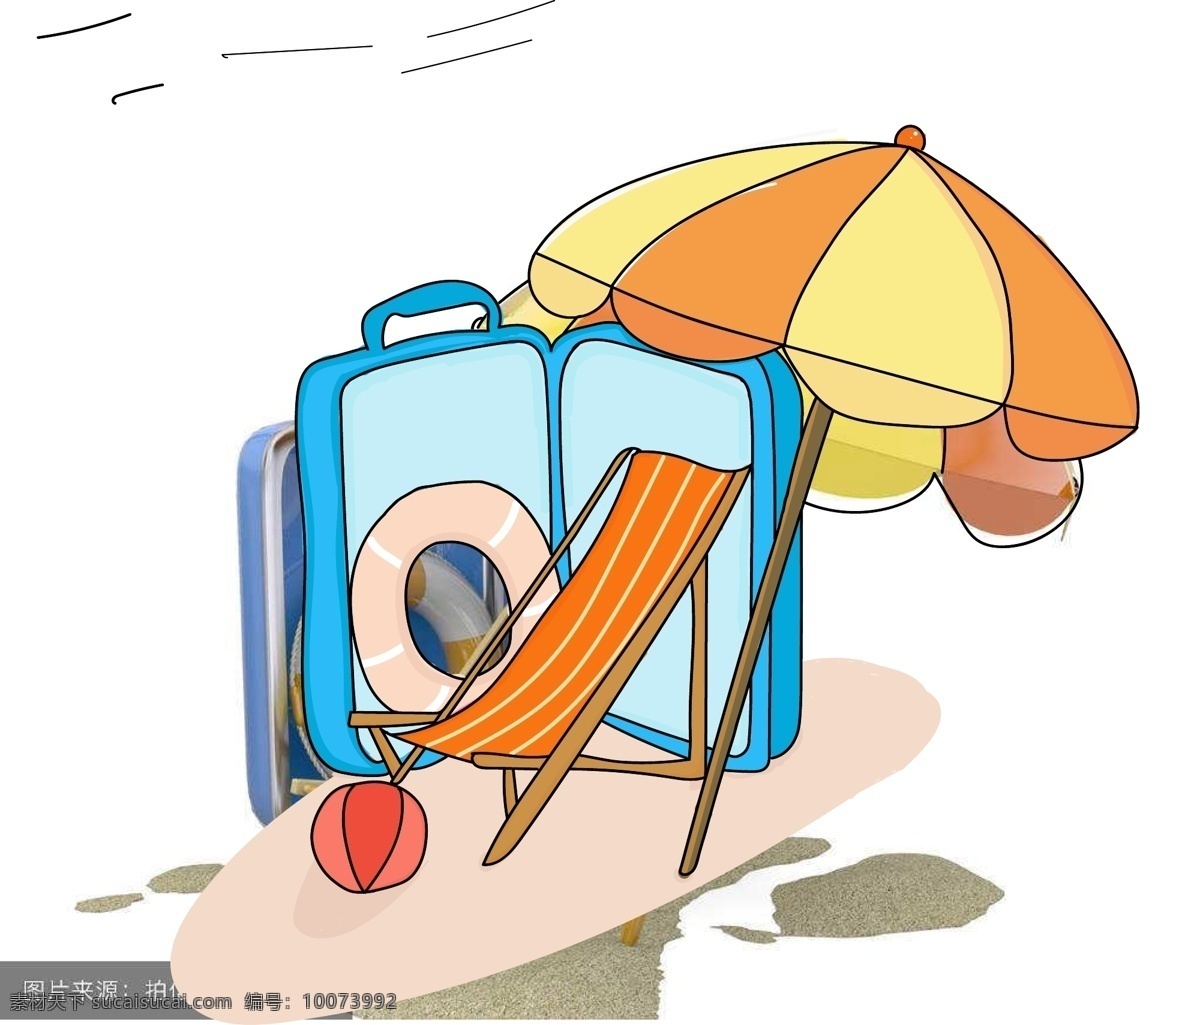 夏日 沙滩 旅行 海岸 沙滩椅 遮阳伞 游泳 圈 行李箱 夏季 游泳圈 旅行箱 沙滩排球 大海 卡通可爱 旅游 游玩